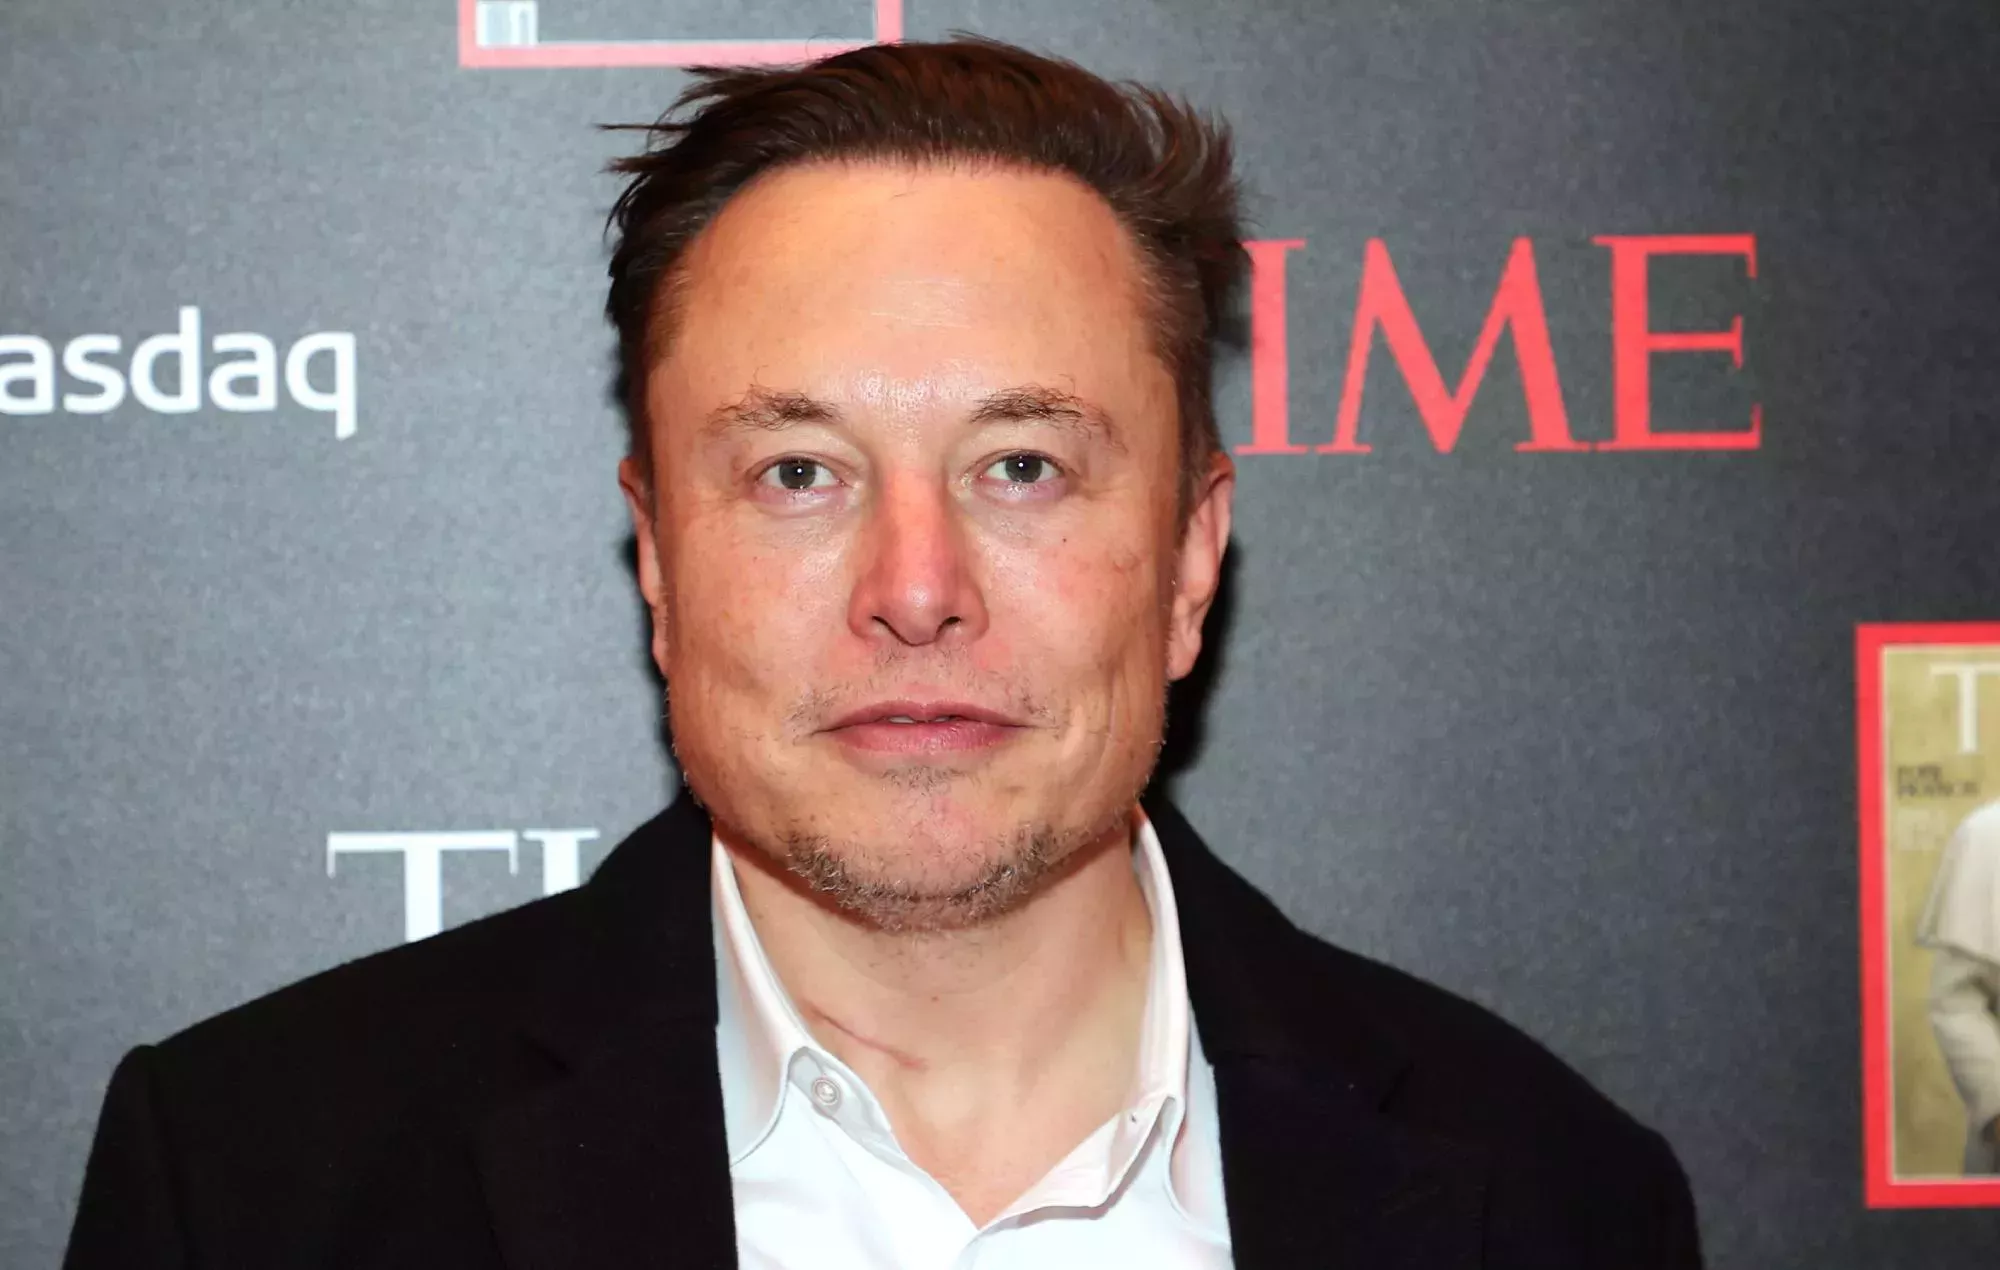 La nueva función de Twitter Blue de Elon Musk se ha utilizado para piratear películas